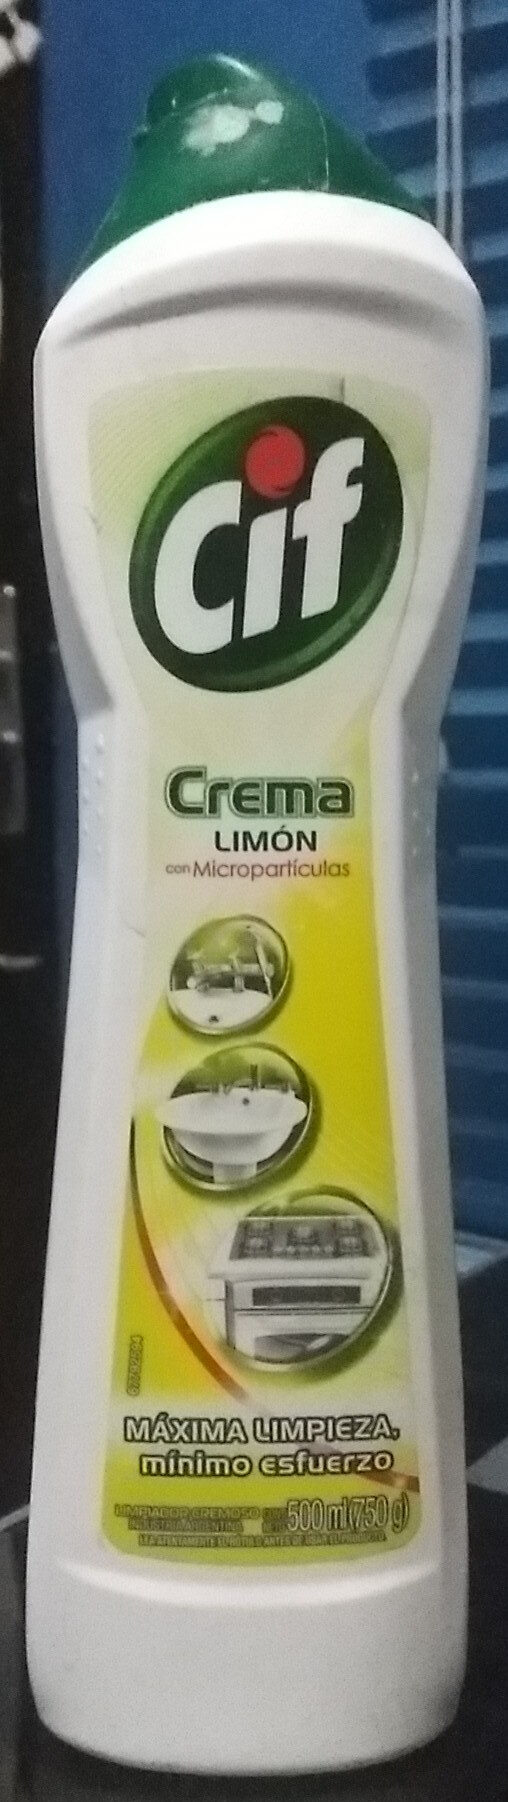 Cif Crema Multiuso Limón - Product - es